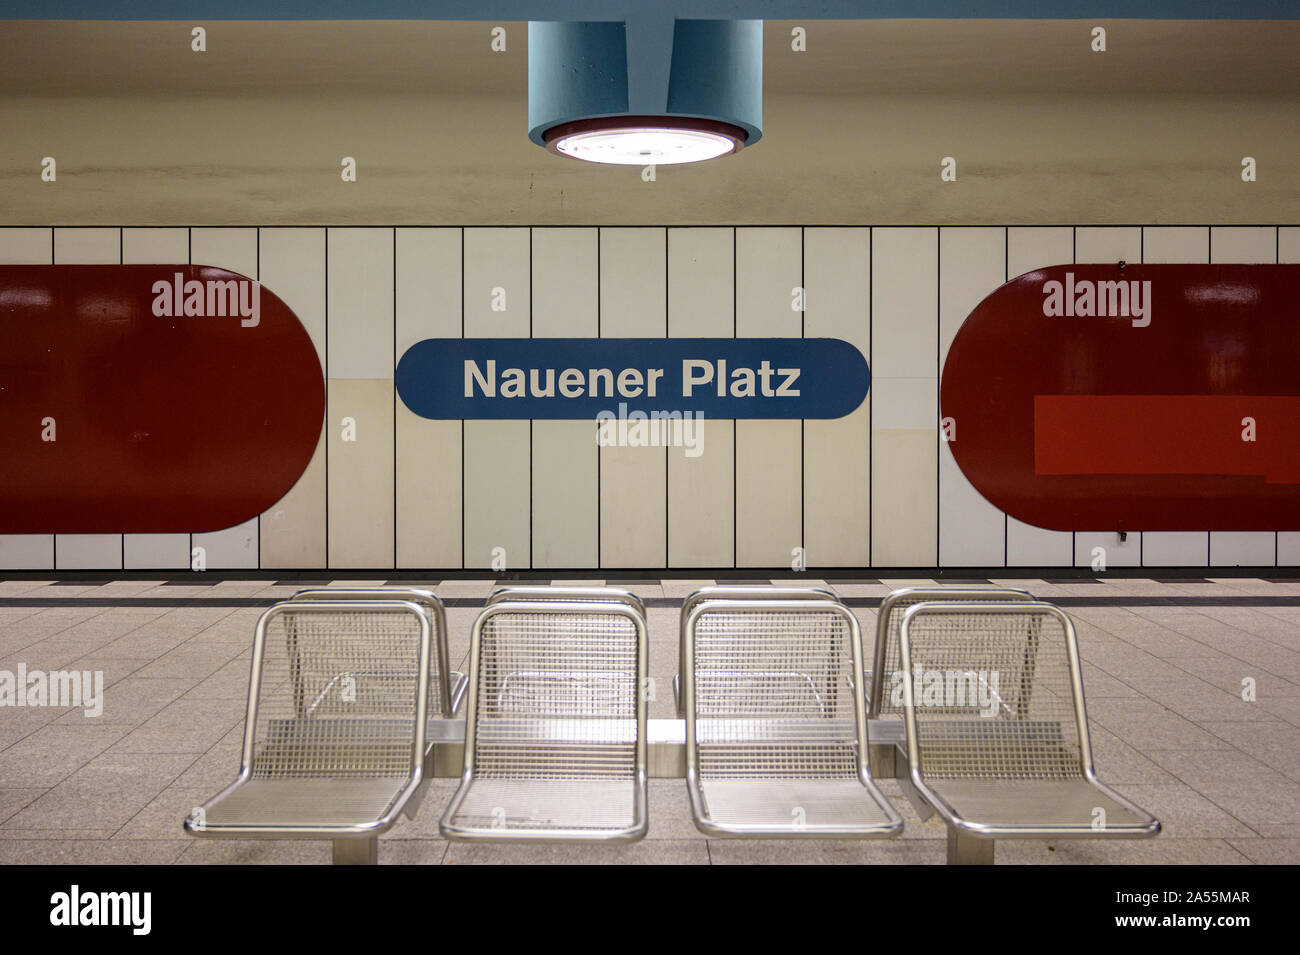 Berlin. L'Allemagne. La Nauener Platz, sur la ligne U9 utilise la police Helvetica. Nauener Platz U-Bahnhof (U-Bahn (métro) conçu par l'architecte allemand Banque D'Images